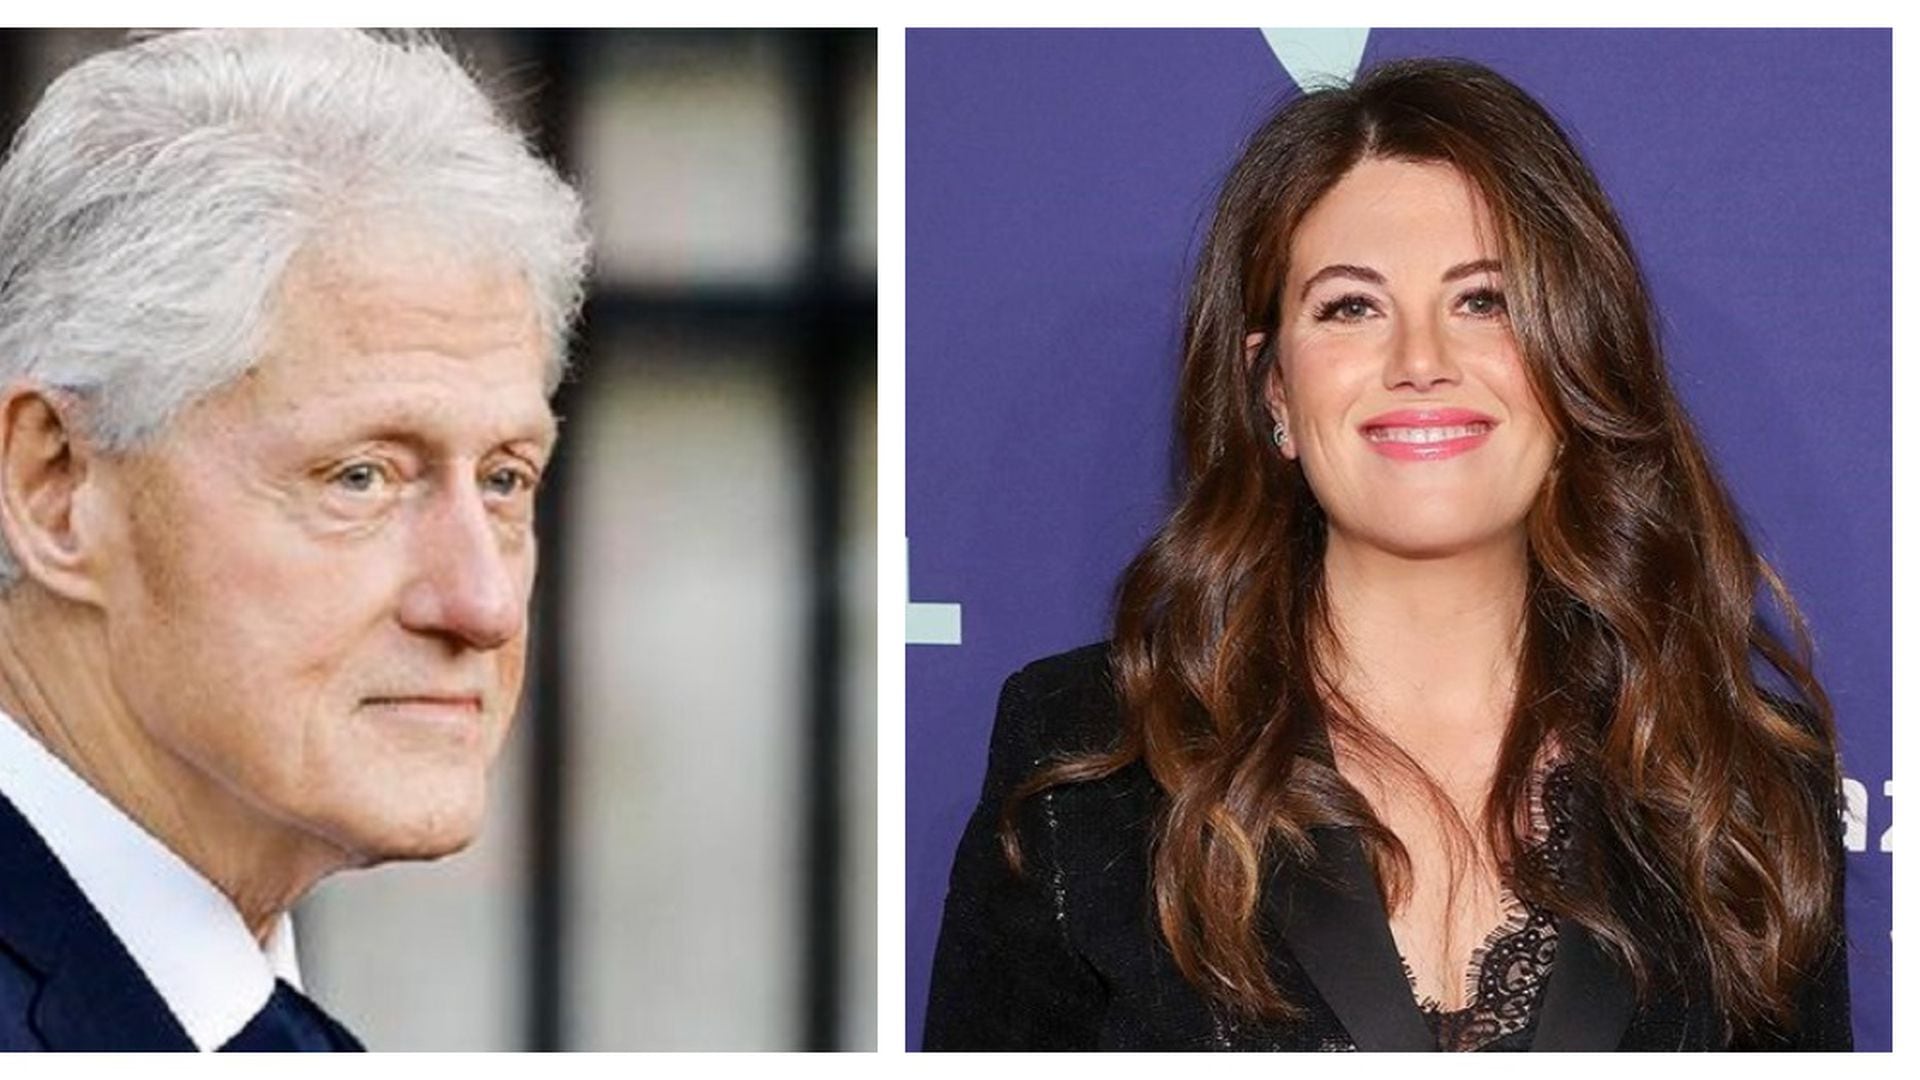 La otra mujer”, “narcisista loca”: Monica Lewinsky, antes incomprendida,  hoy es la pesadilla de Bill Clinton